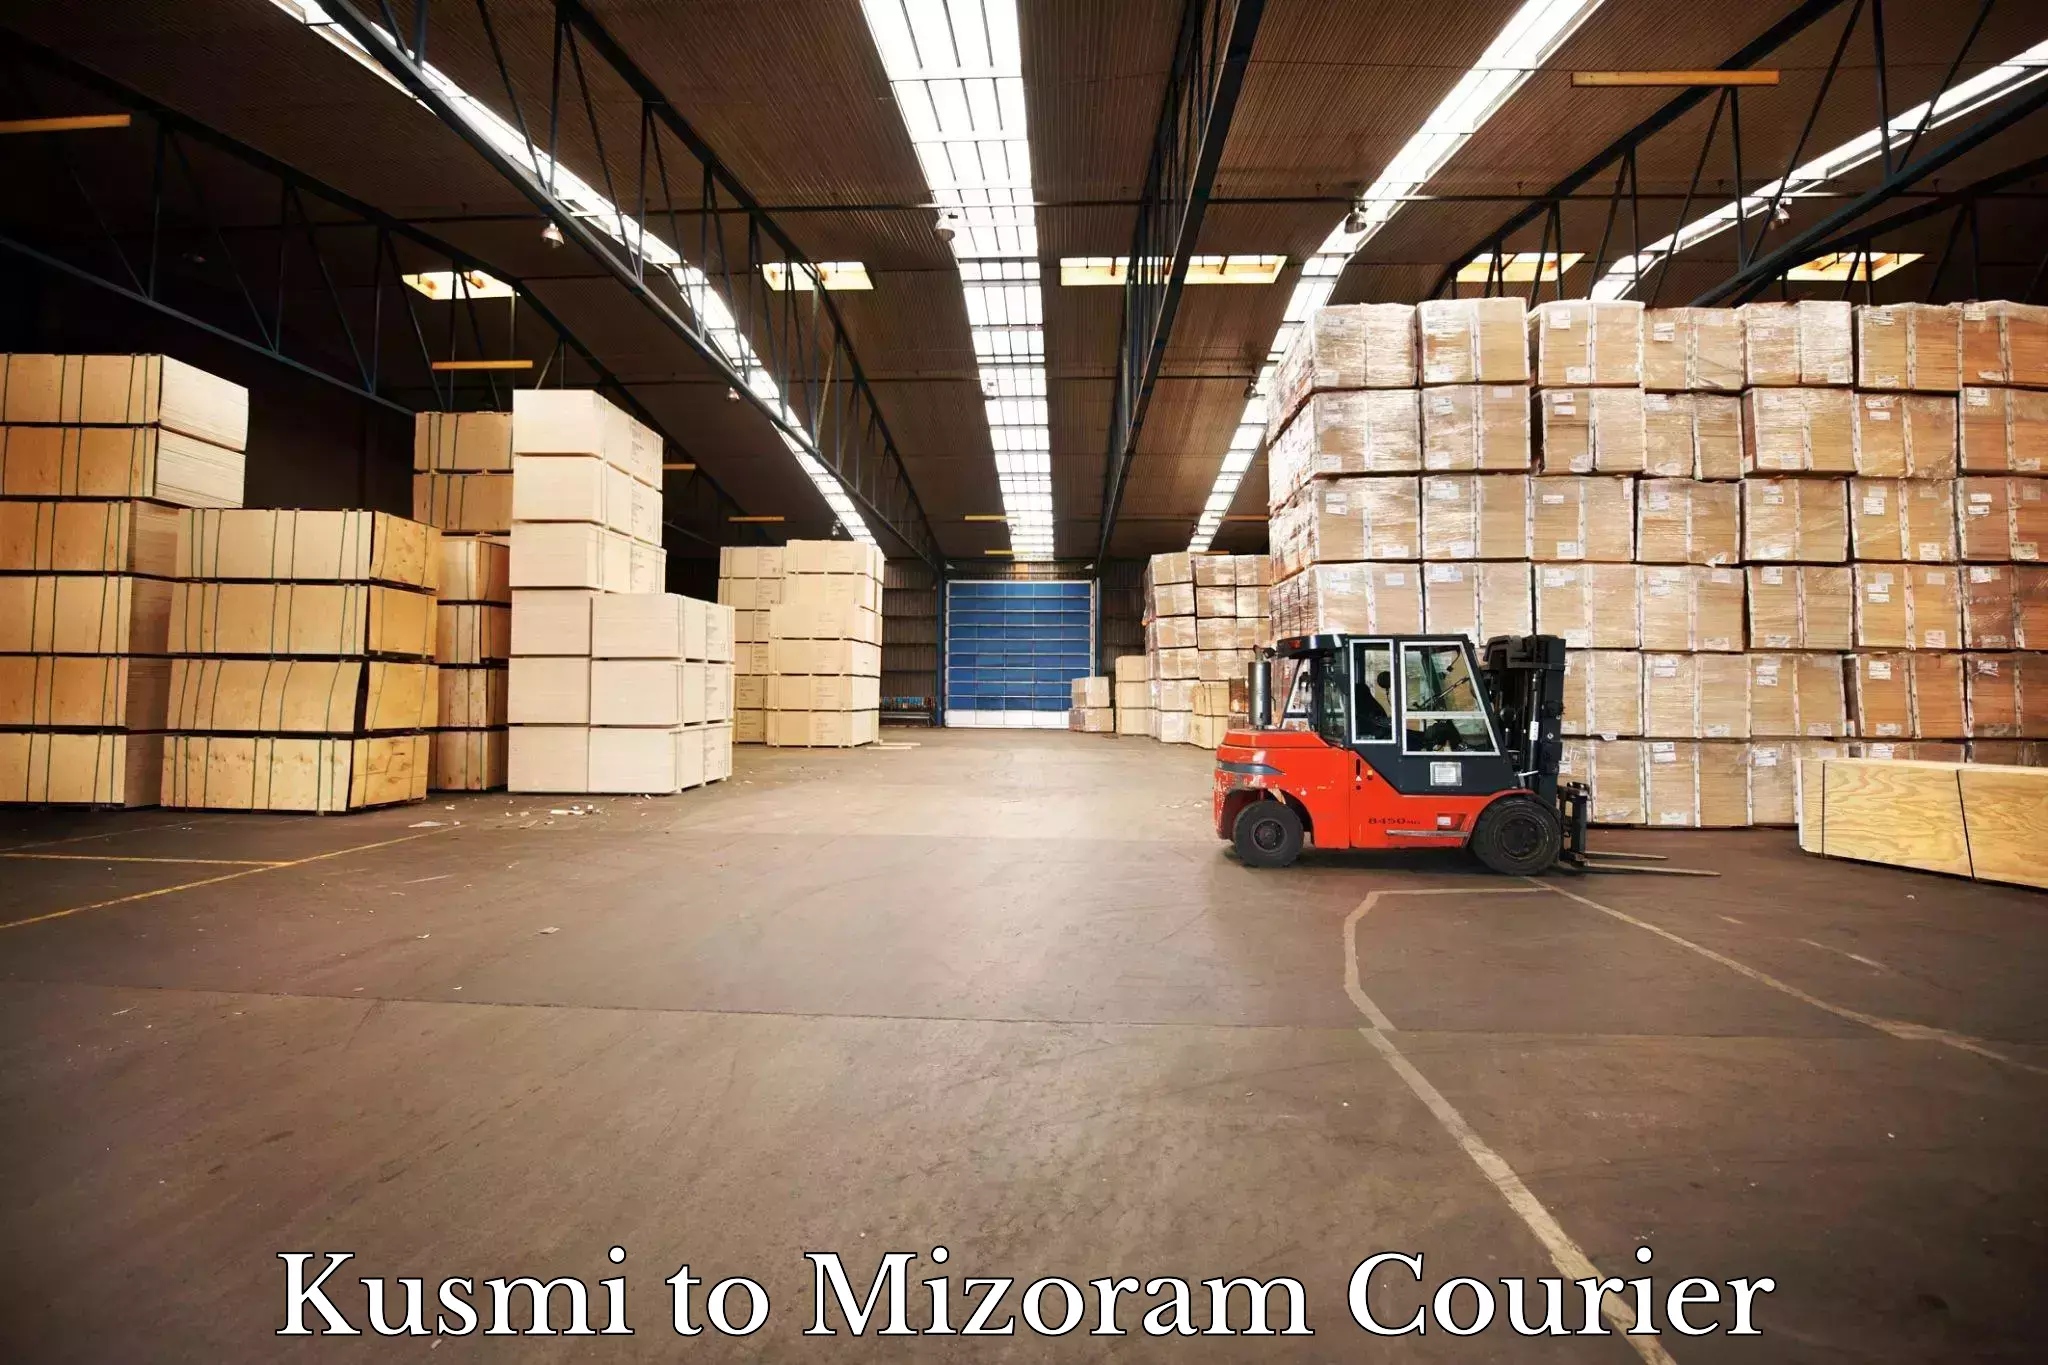 International logistics in Kusmi to Darlawn